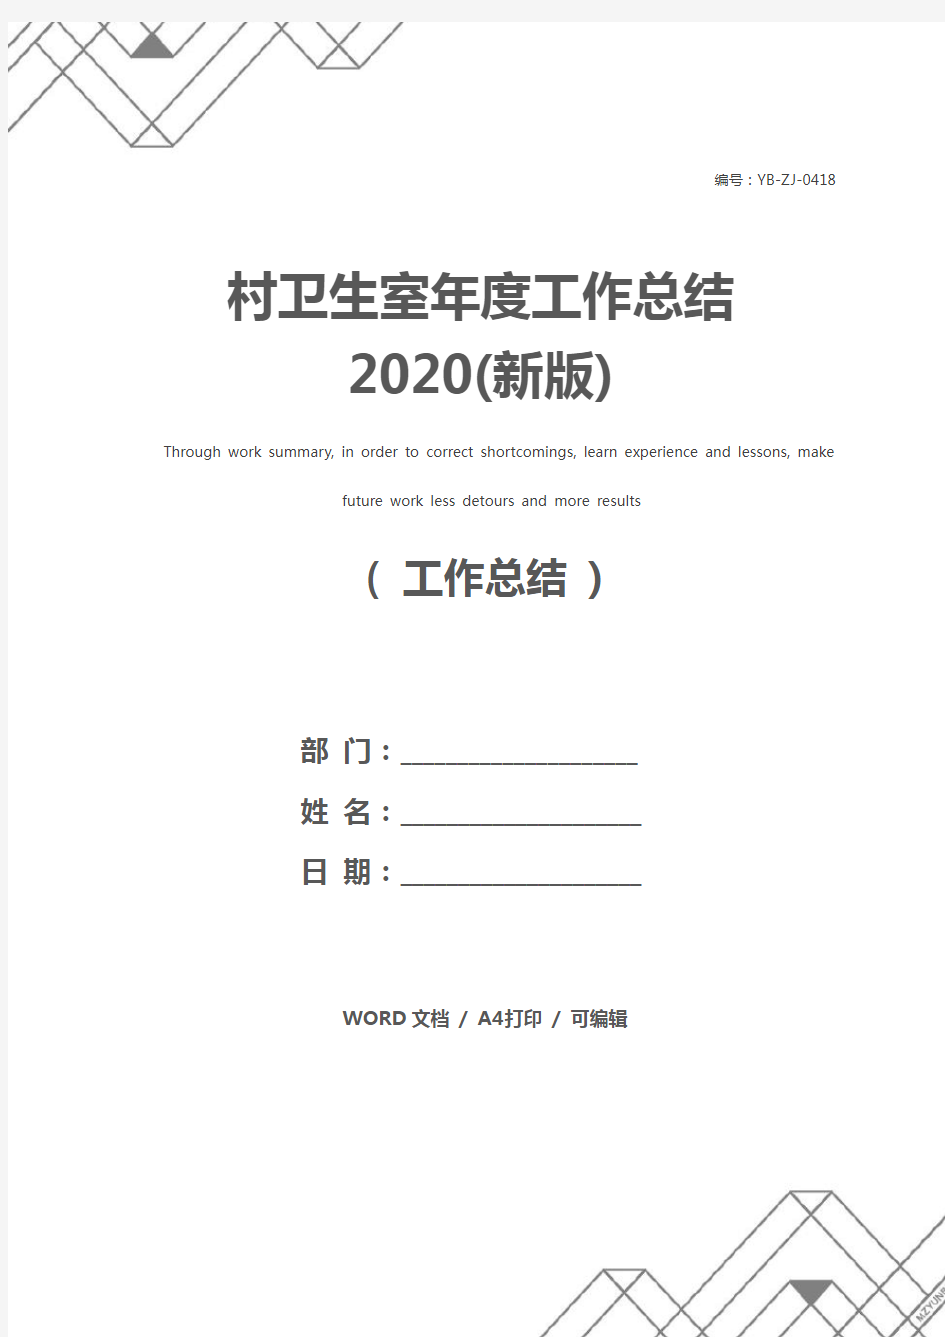 村卫生室年度工作总结2020(新版)